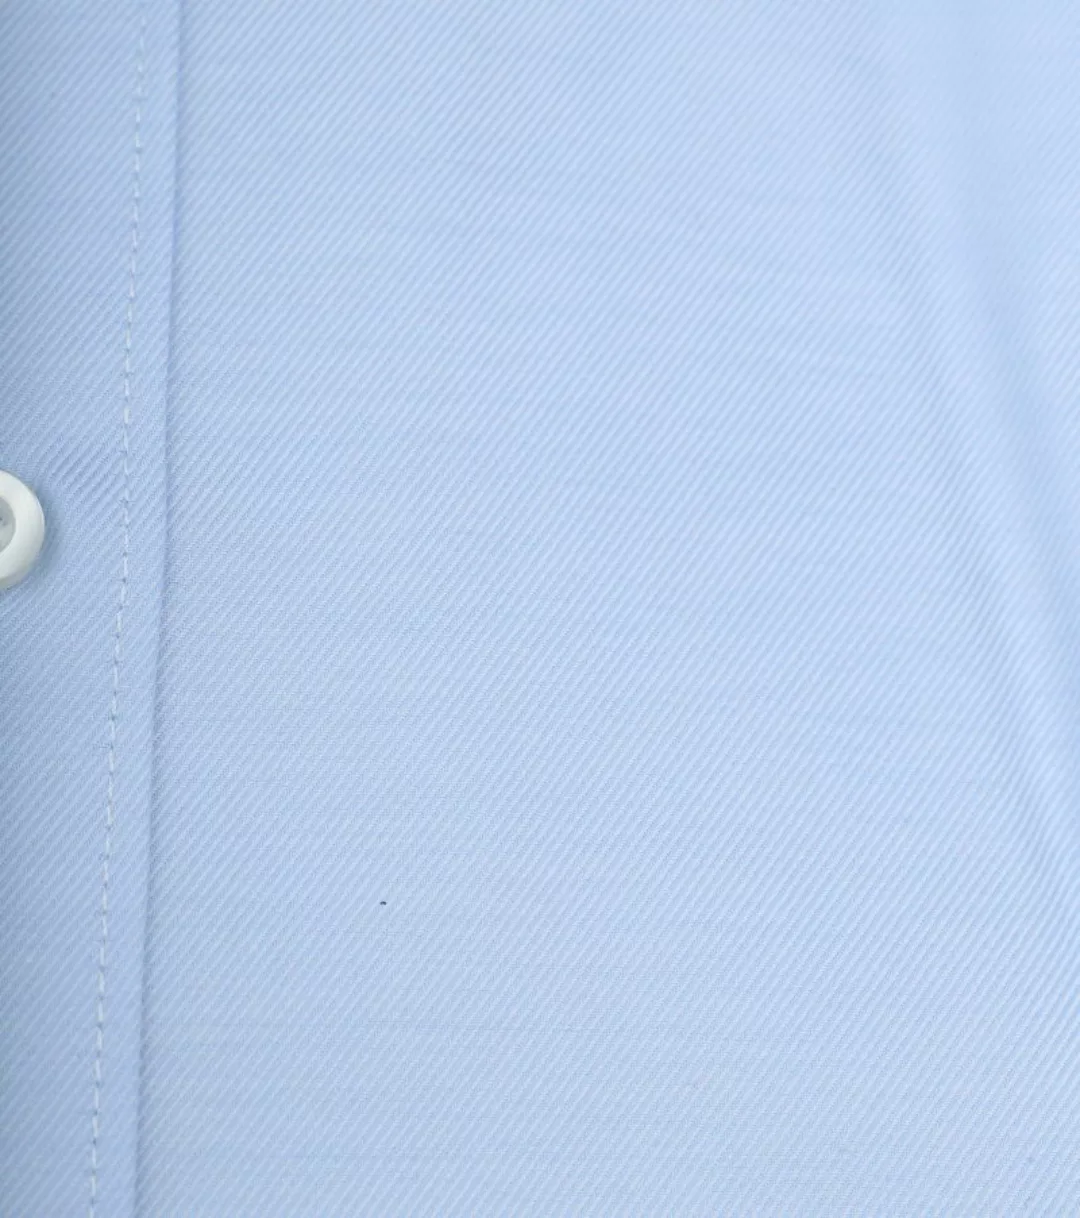 OLYMP Level 5 Hemd Hellblau  - Größe 42 günstig online kaufen